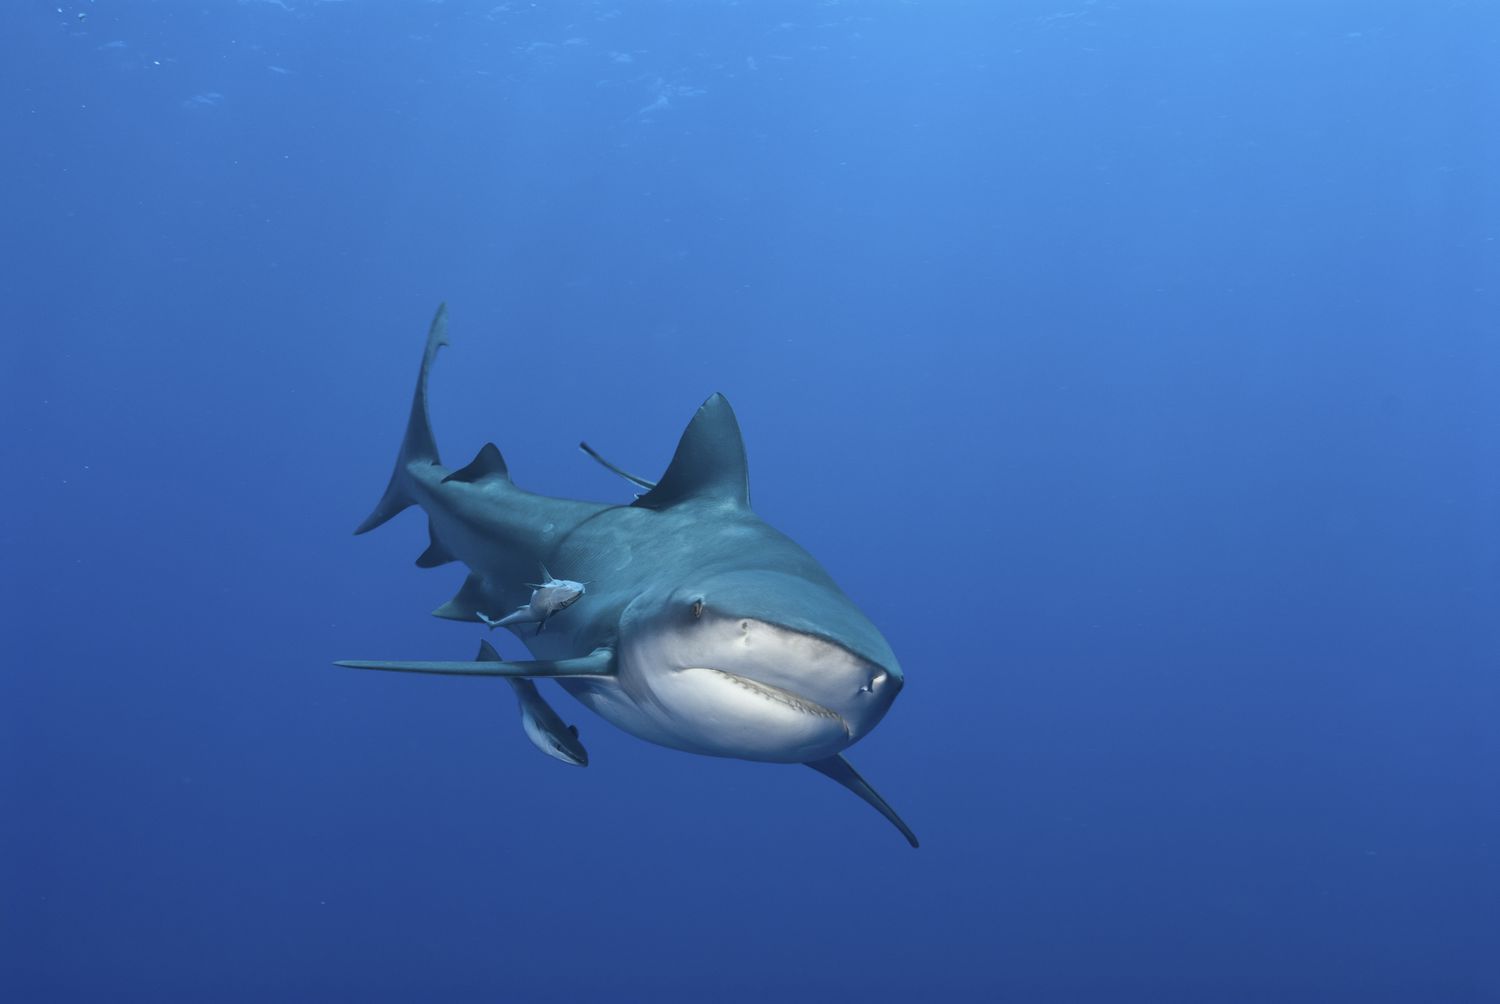 Тупорылая акула плывет к камере в пустой голубой воде